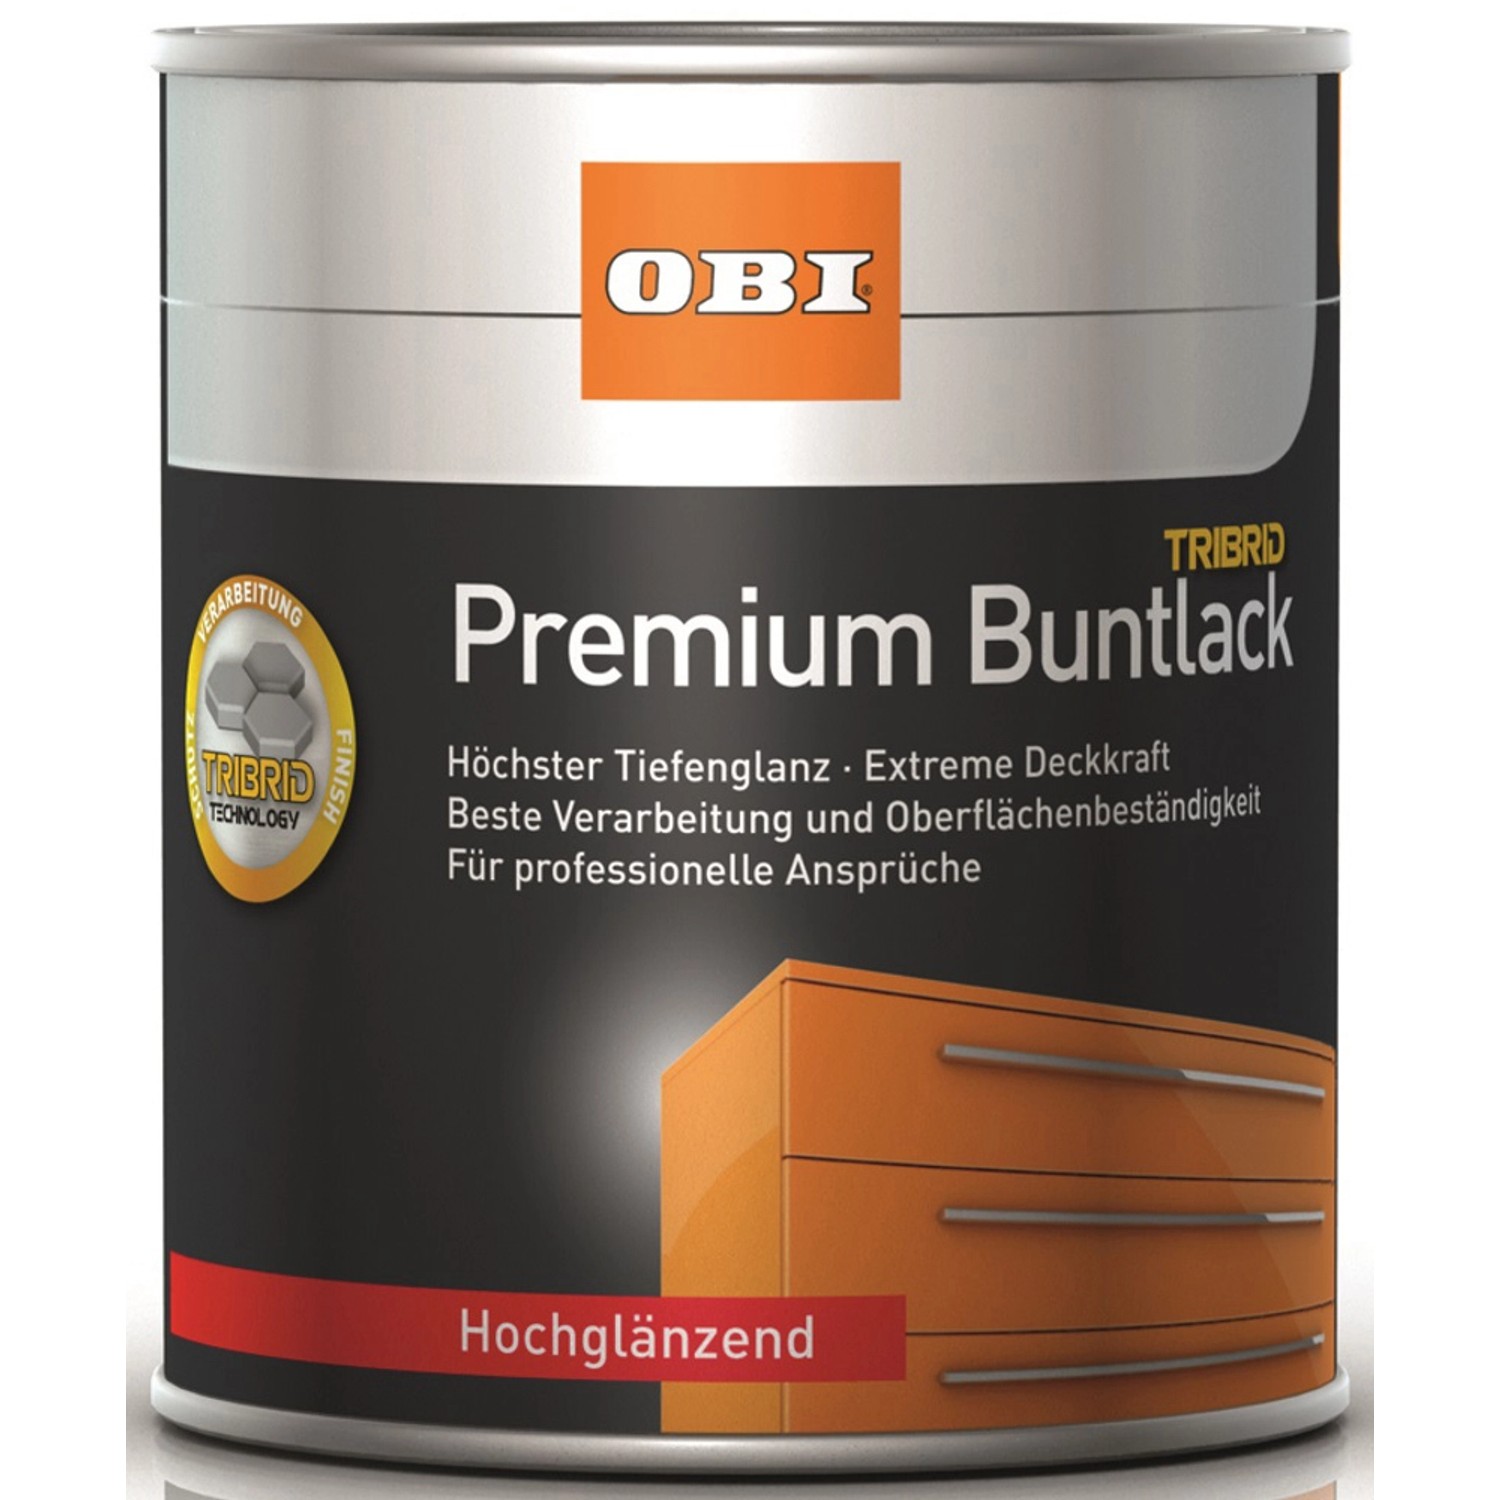 OBI Premium Buntlack Tribrid Tiefschwarz hochglänzend 750 ml von OBI